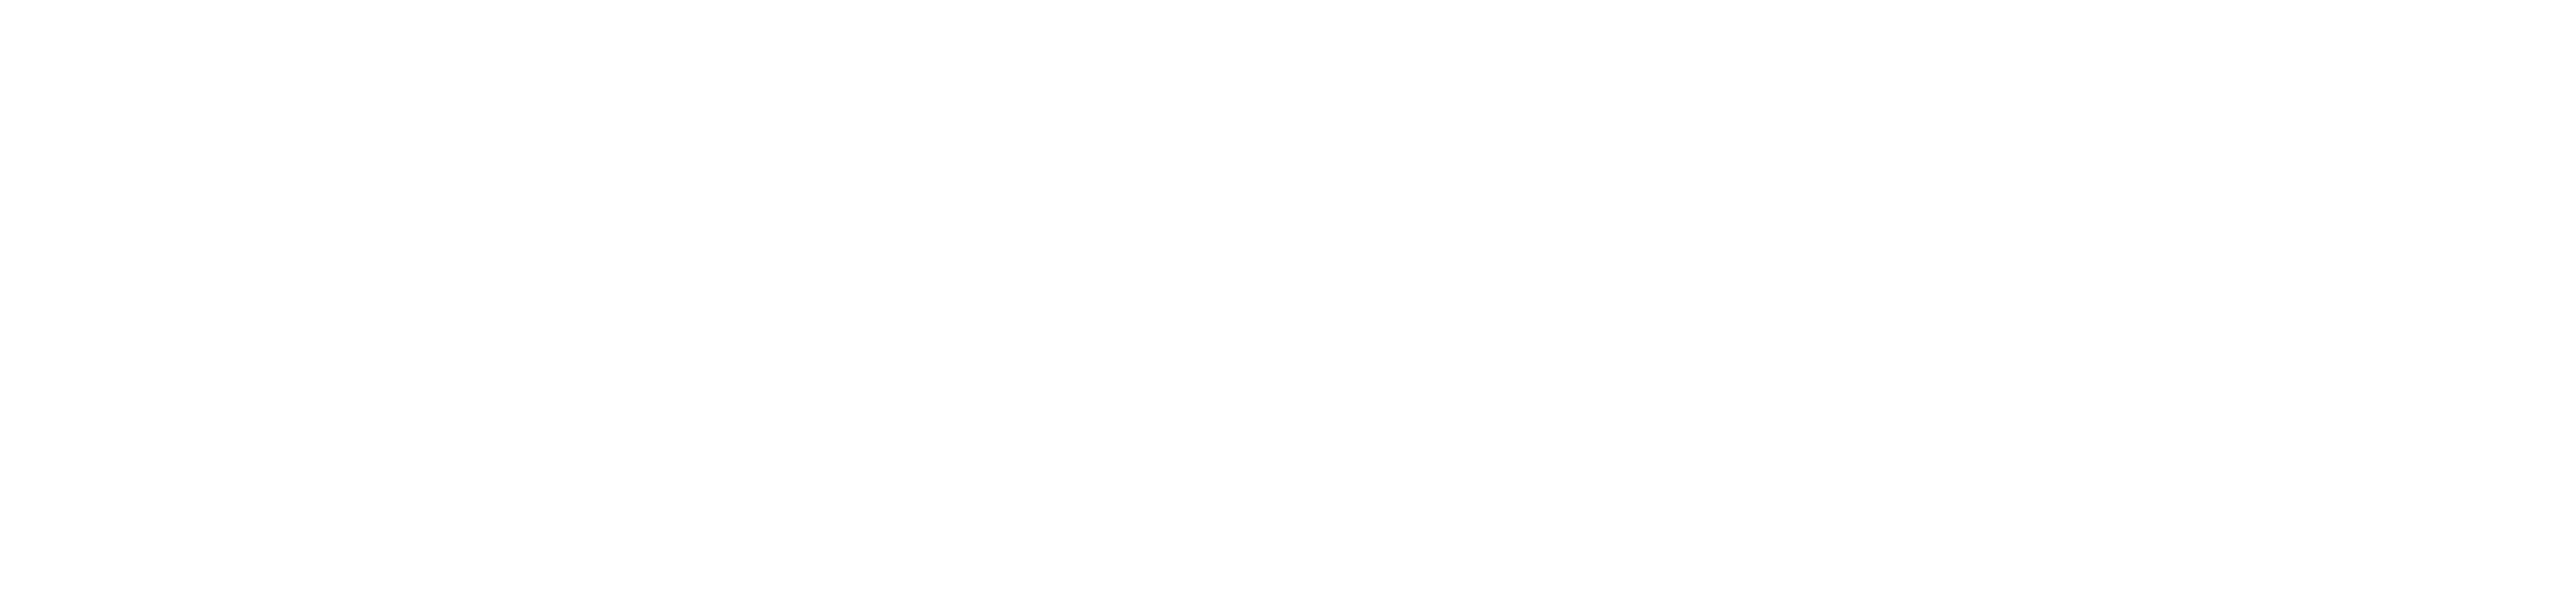 olivo energy logo bianco-01